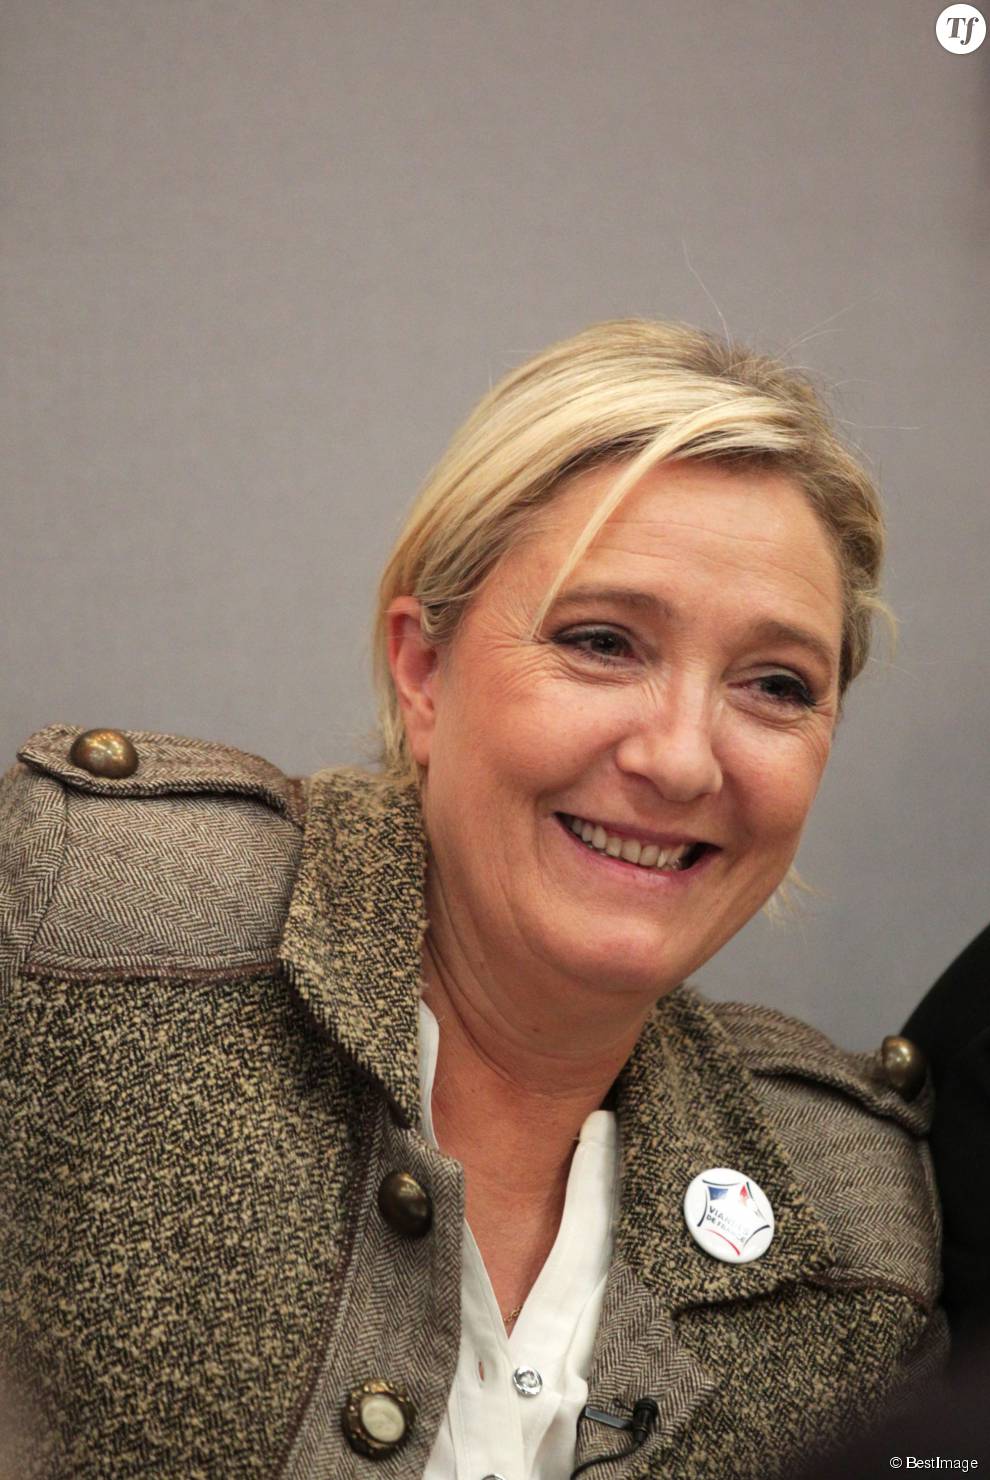   Marine Le Pen au 28ème Salon international des Productions Animales à Rennes le 17 septembre 2015.  